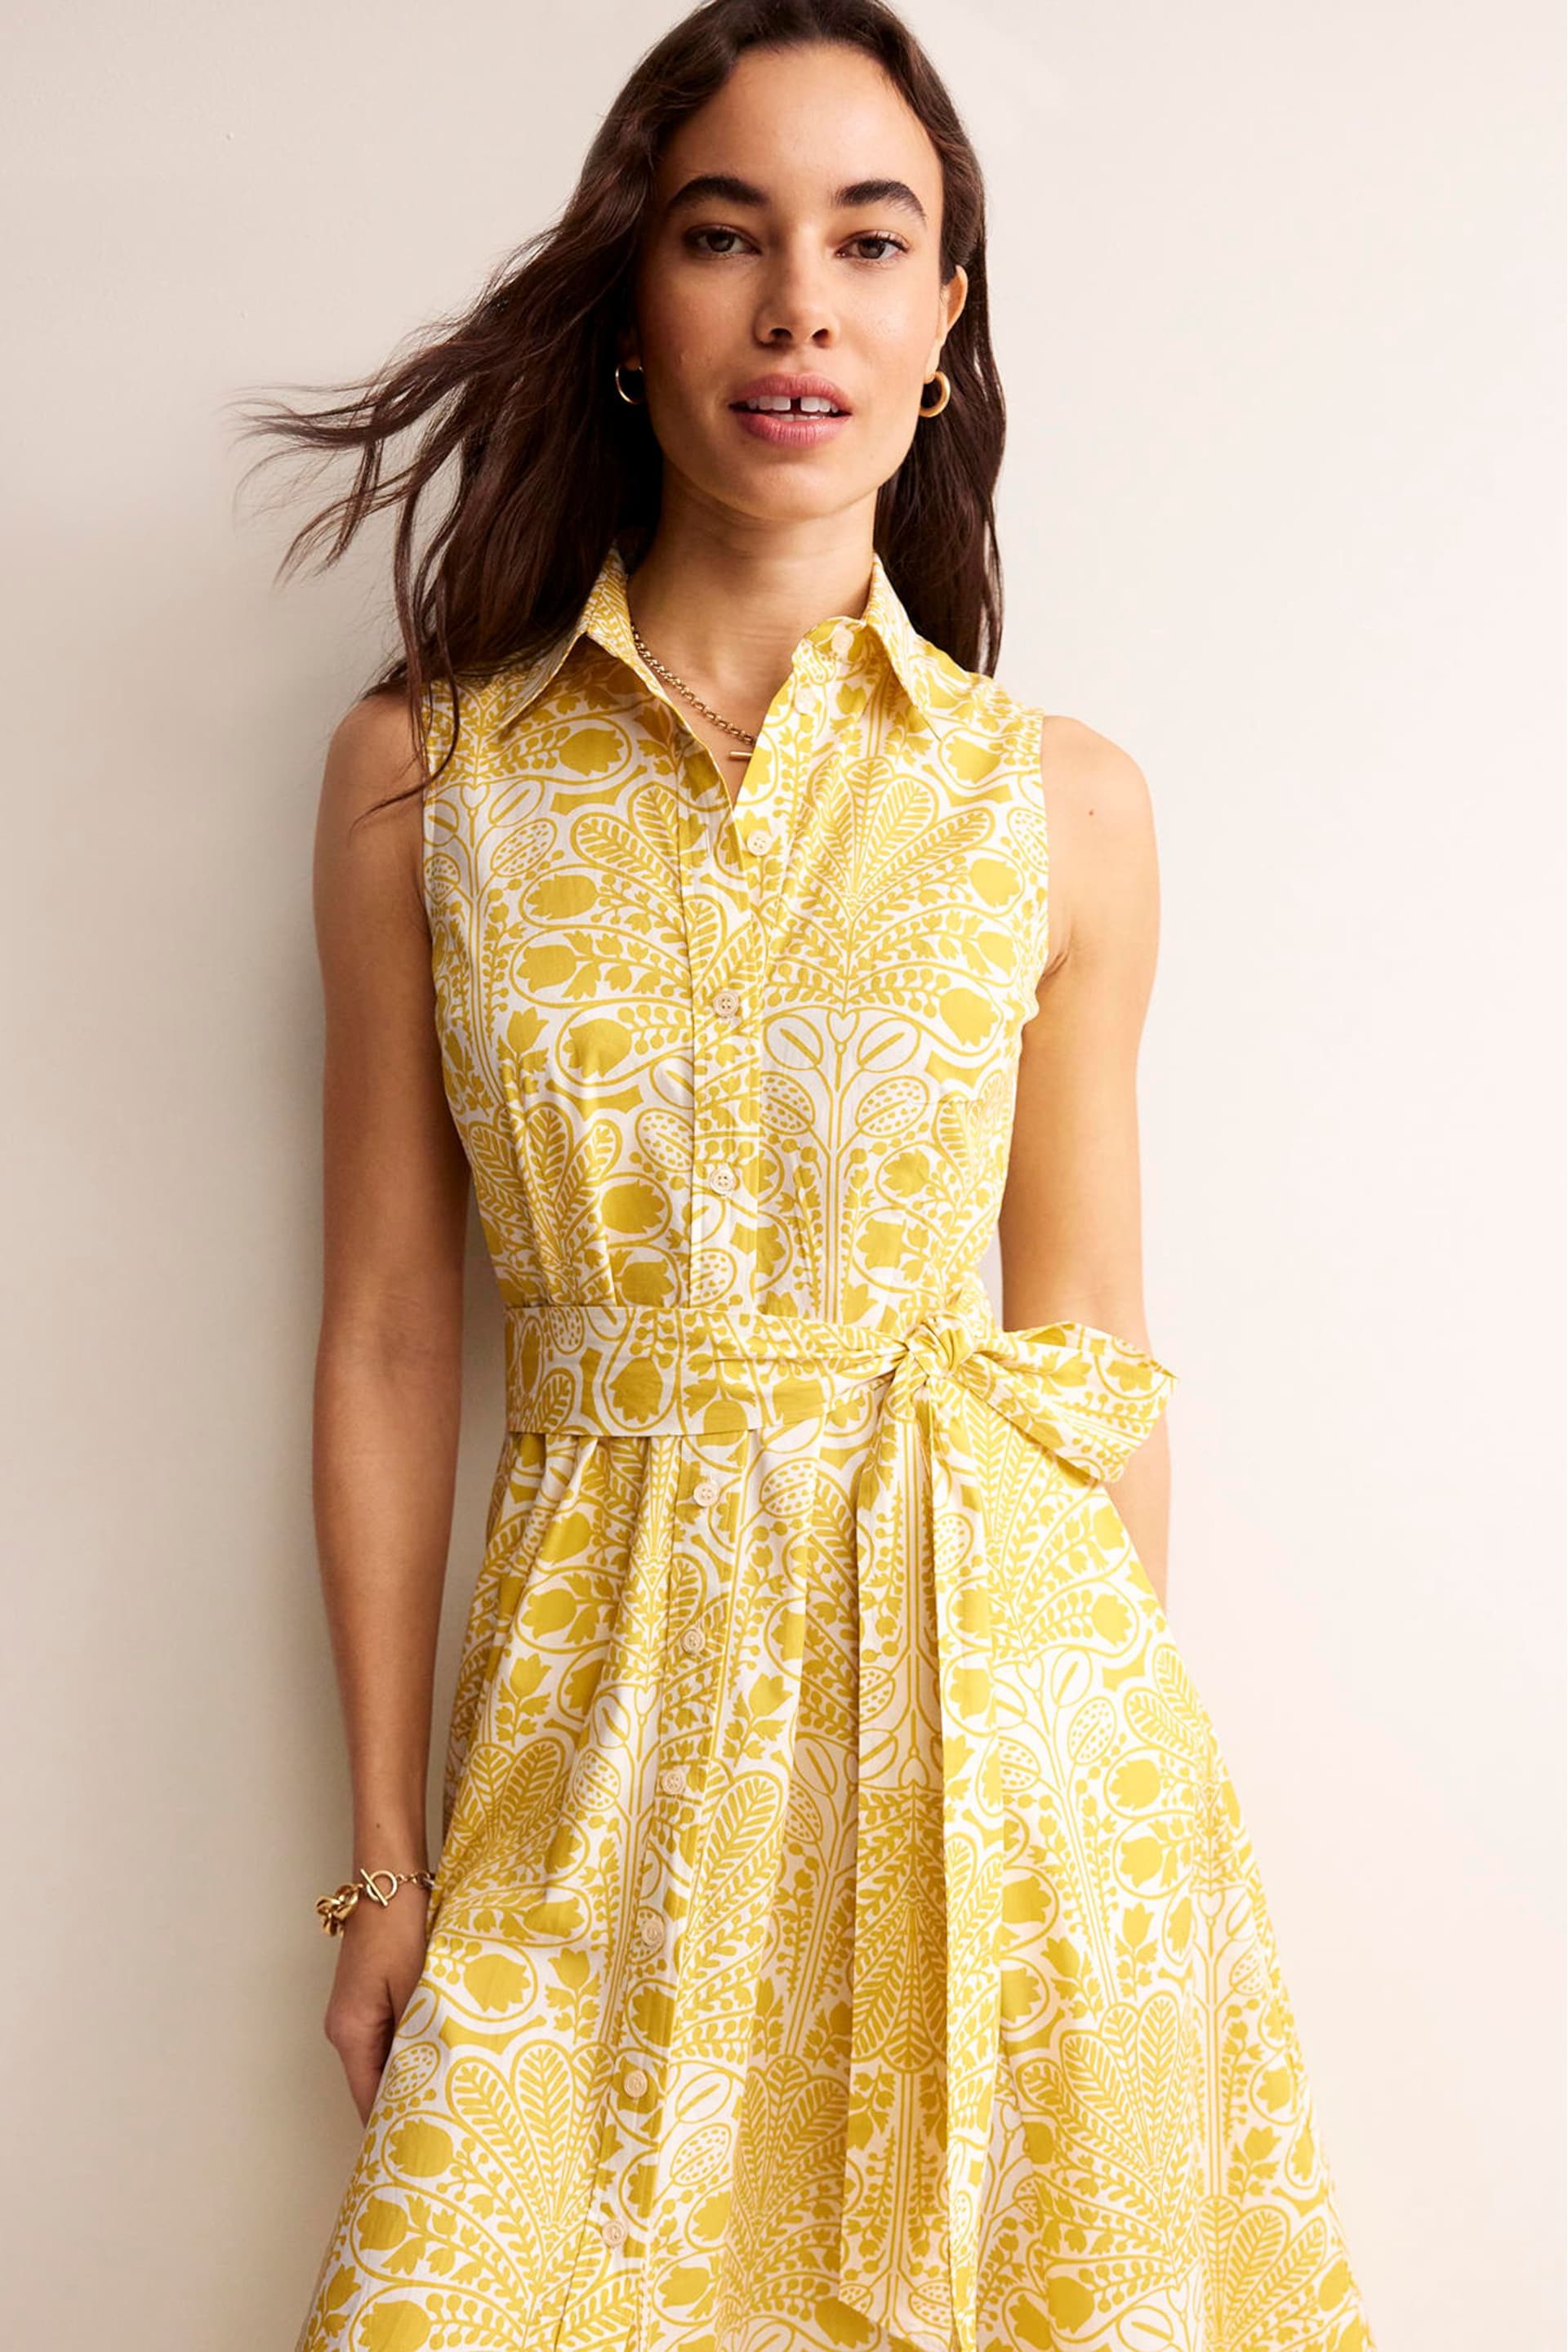 Boden Yellow Amy Sleeveless Shirt Dress - Image 2 of 6